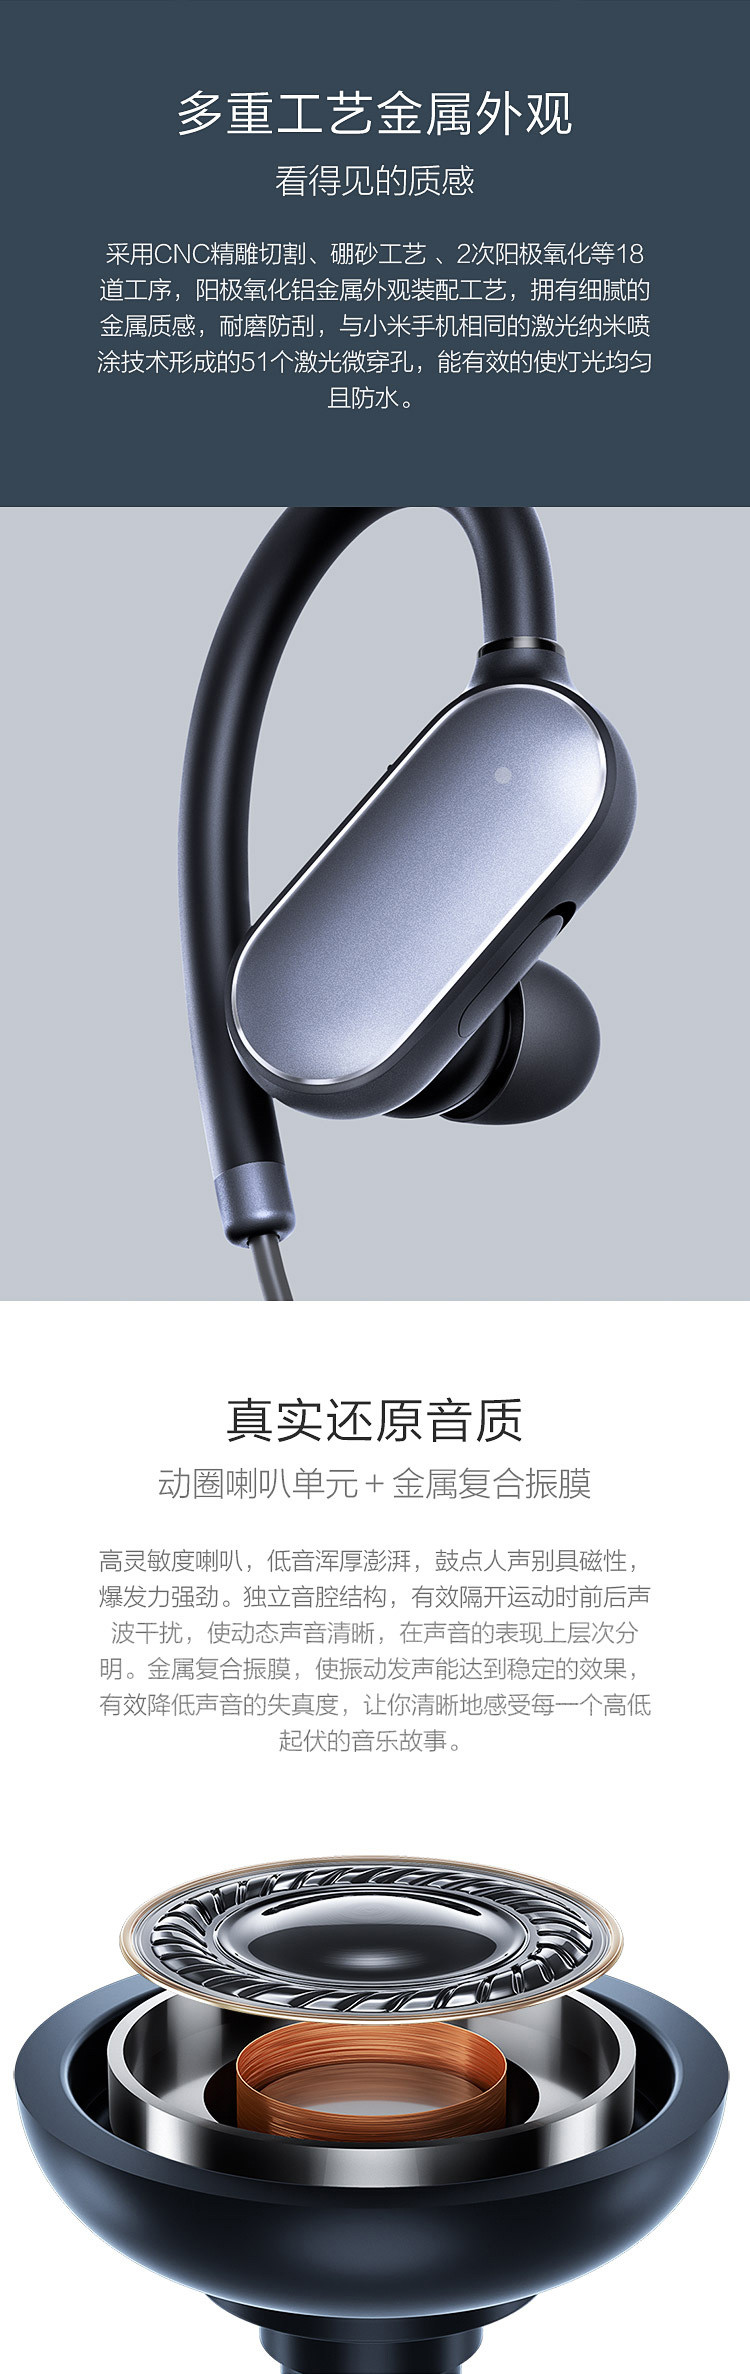 小米（MI）运动蓝牙耳机 白色 入耳式耳塞式挂耳式无线耳机手机通用